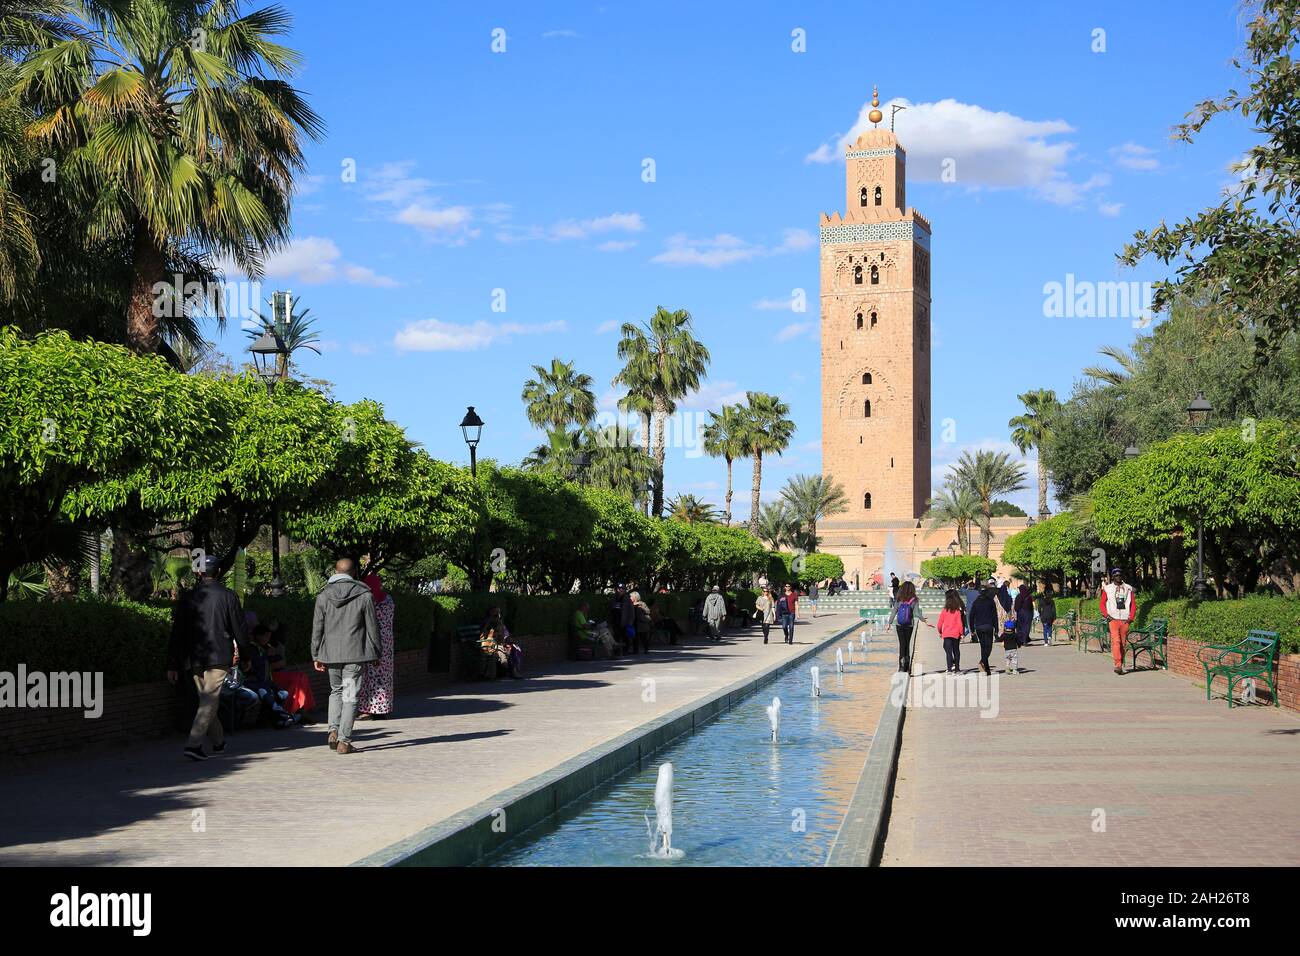 La Moschea di Koutoubia, minareto, del XII secolo, Marrakech, Marrakech, Marocco, Africa del Nord Foto Stock